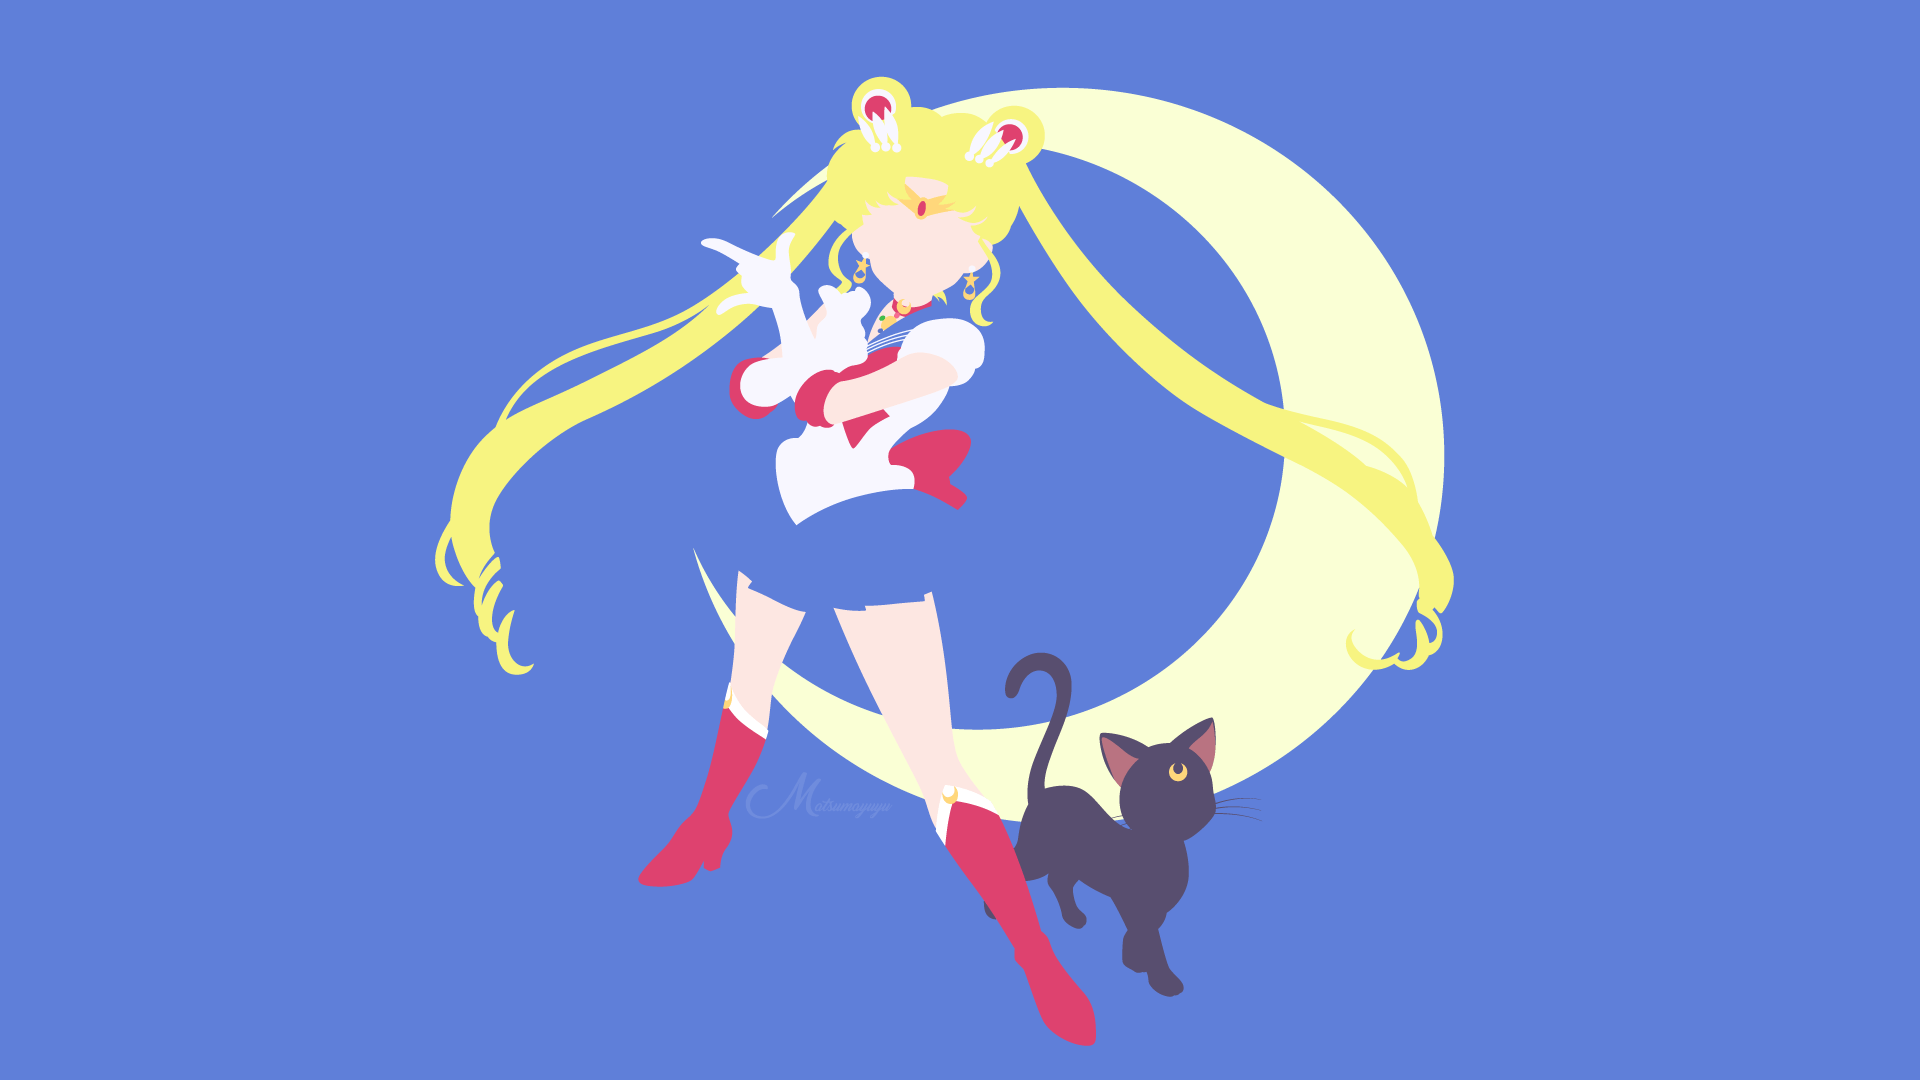 Sailor Moon HD Wallpaper